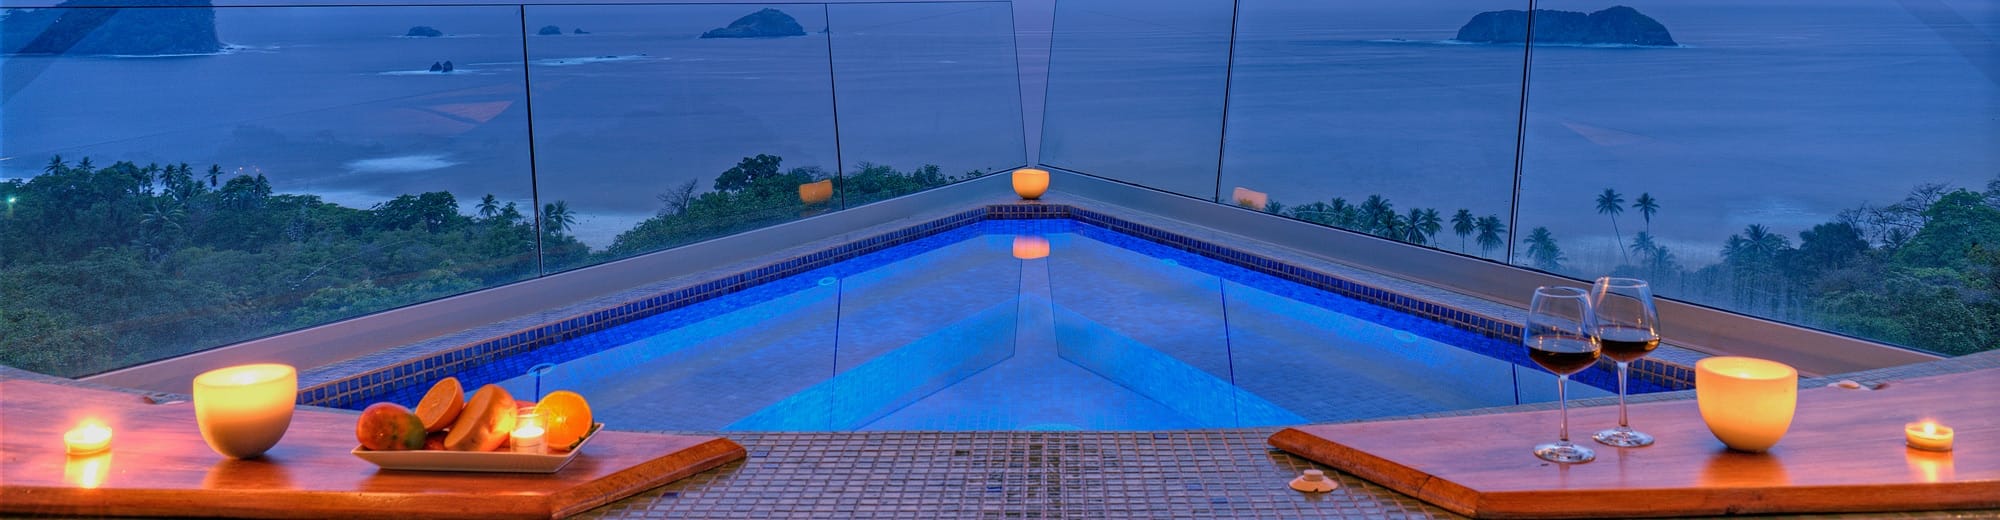 rooftop jacuzzi in luxury costa rica villa